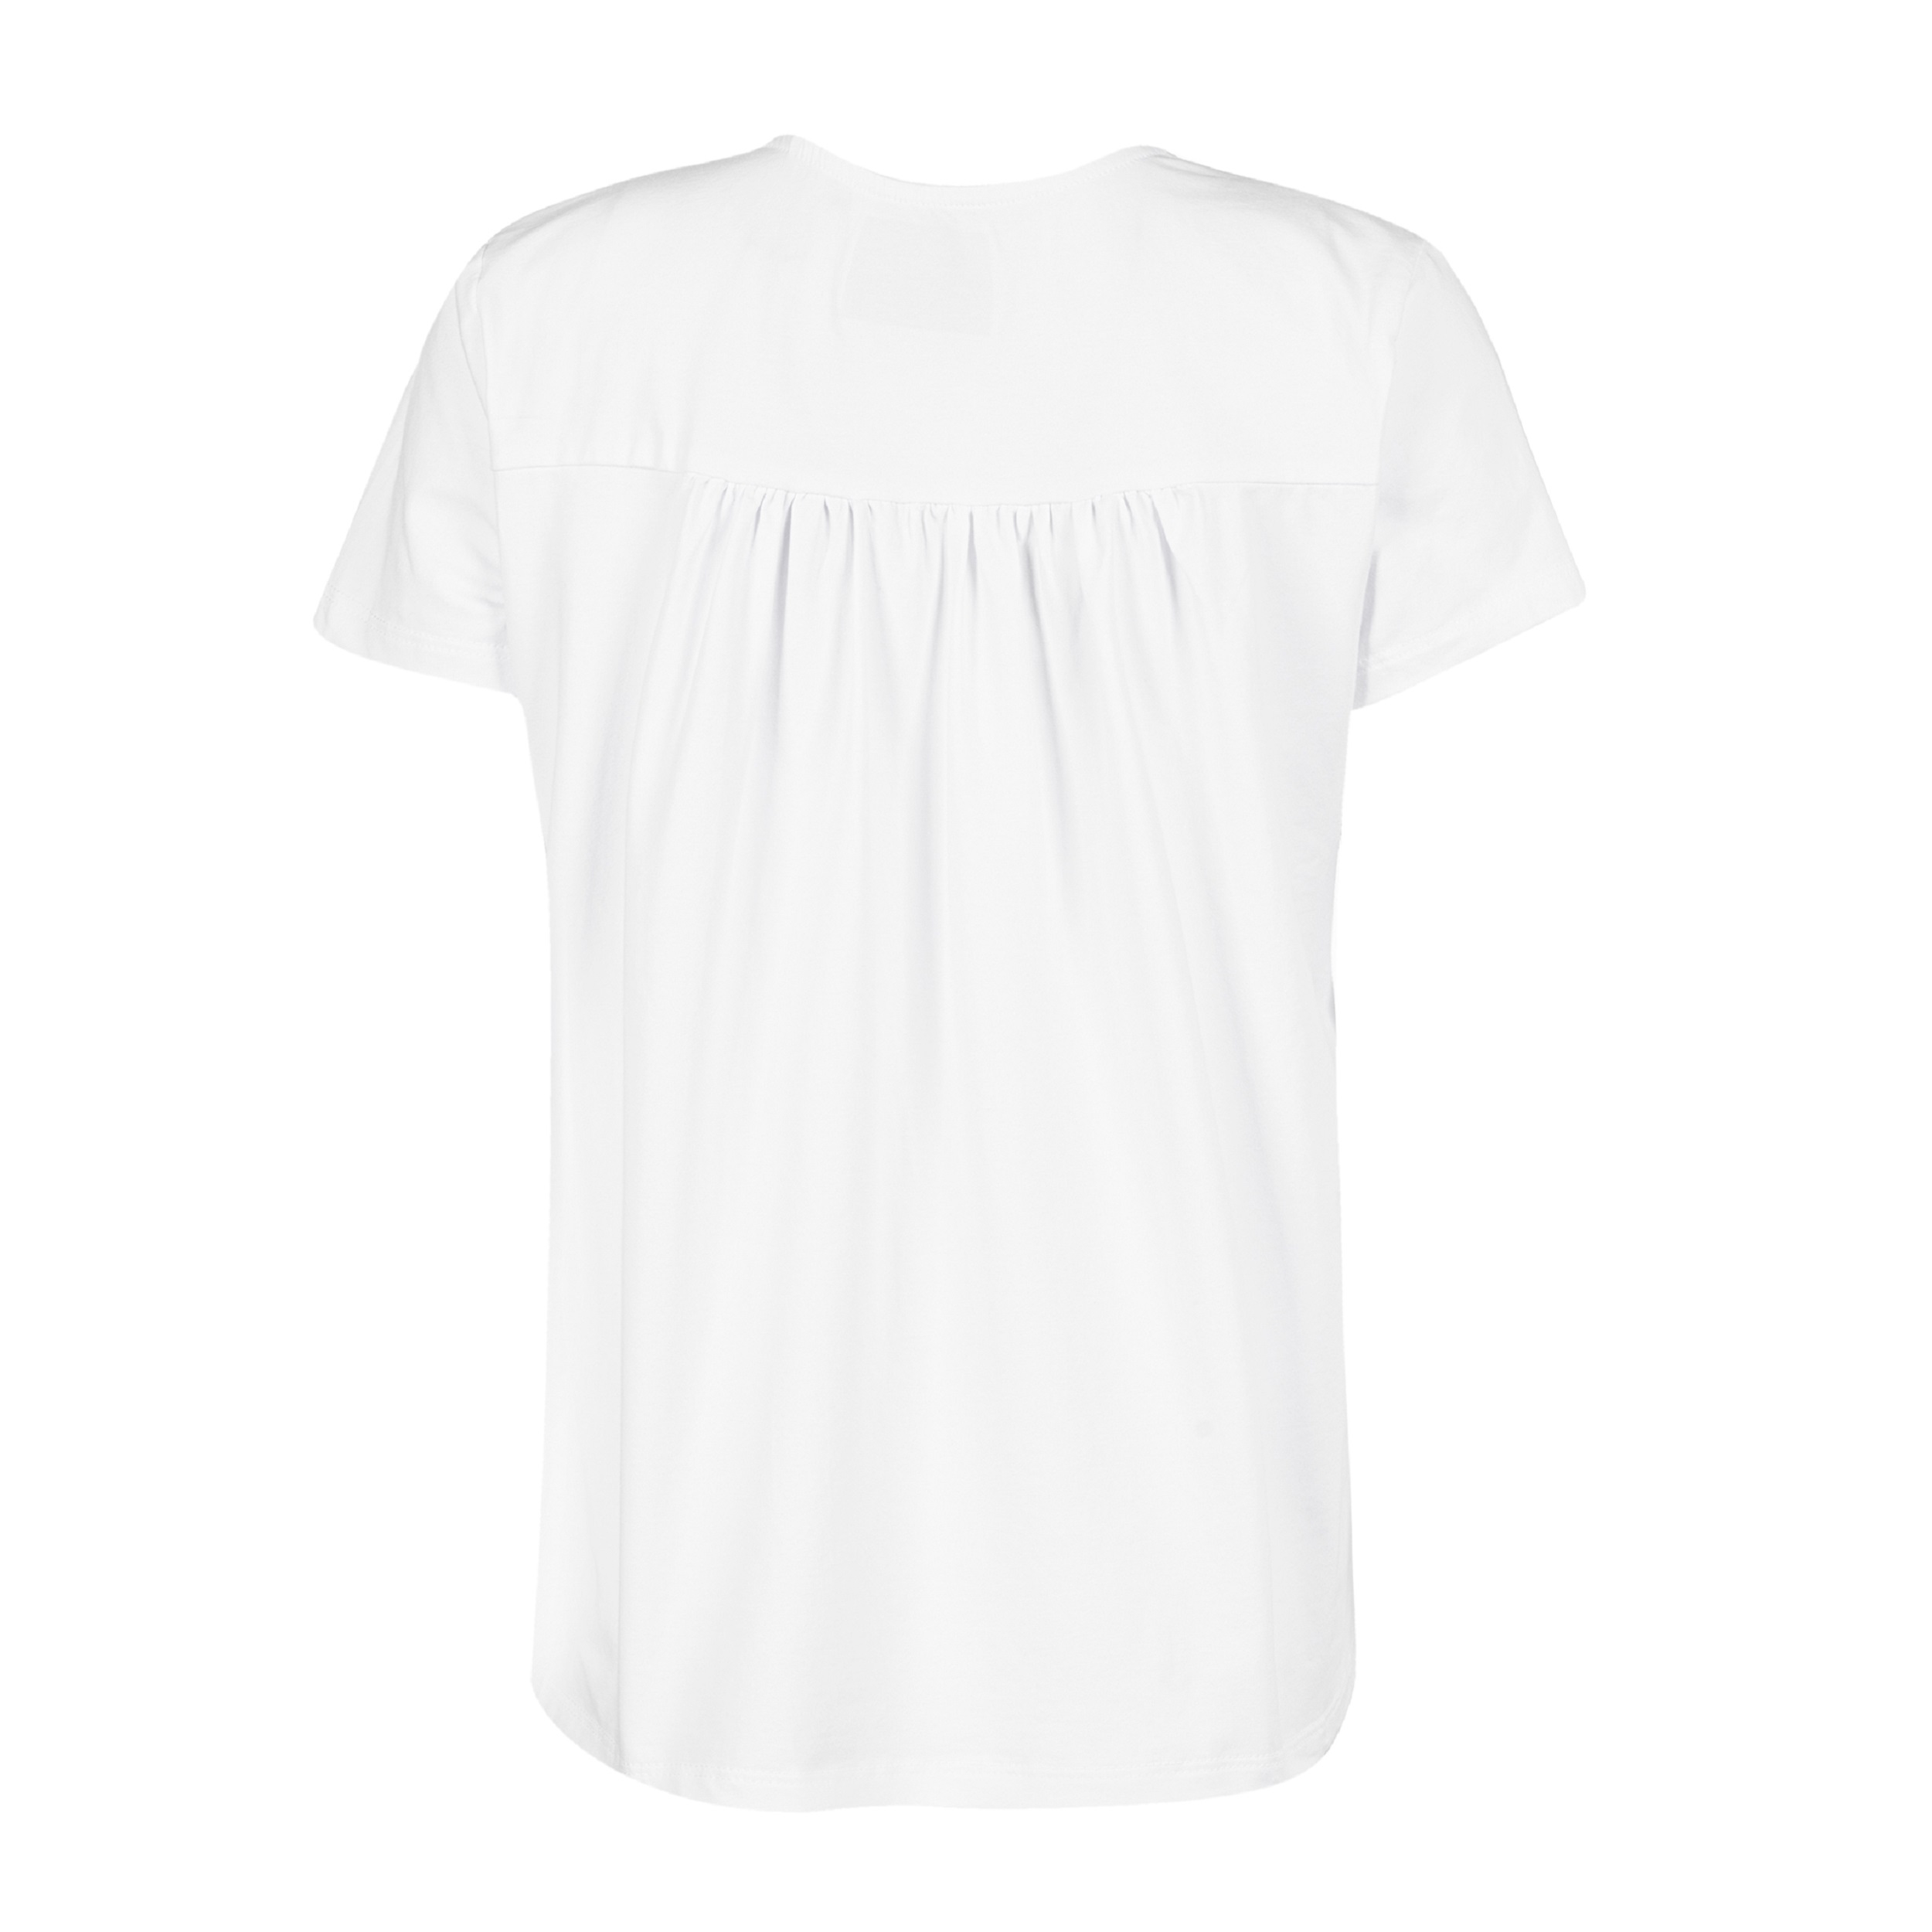 تی شرت آستین کوتاه زنانه جوتی جینز مدل یقه گرد کد 1551316 رنگ سفید -  - 2